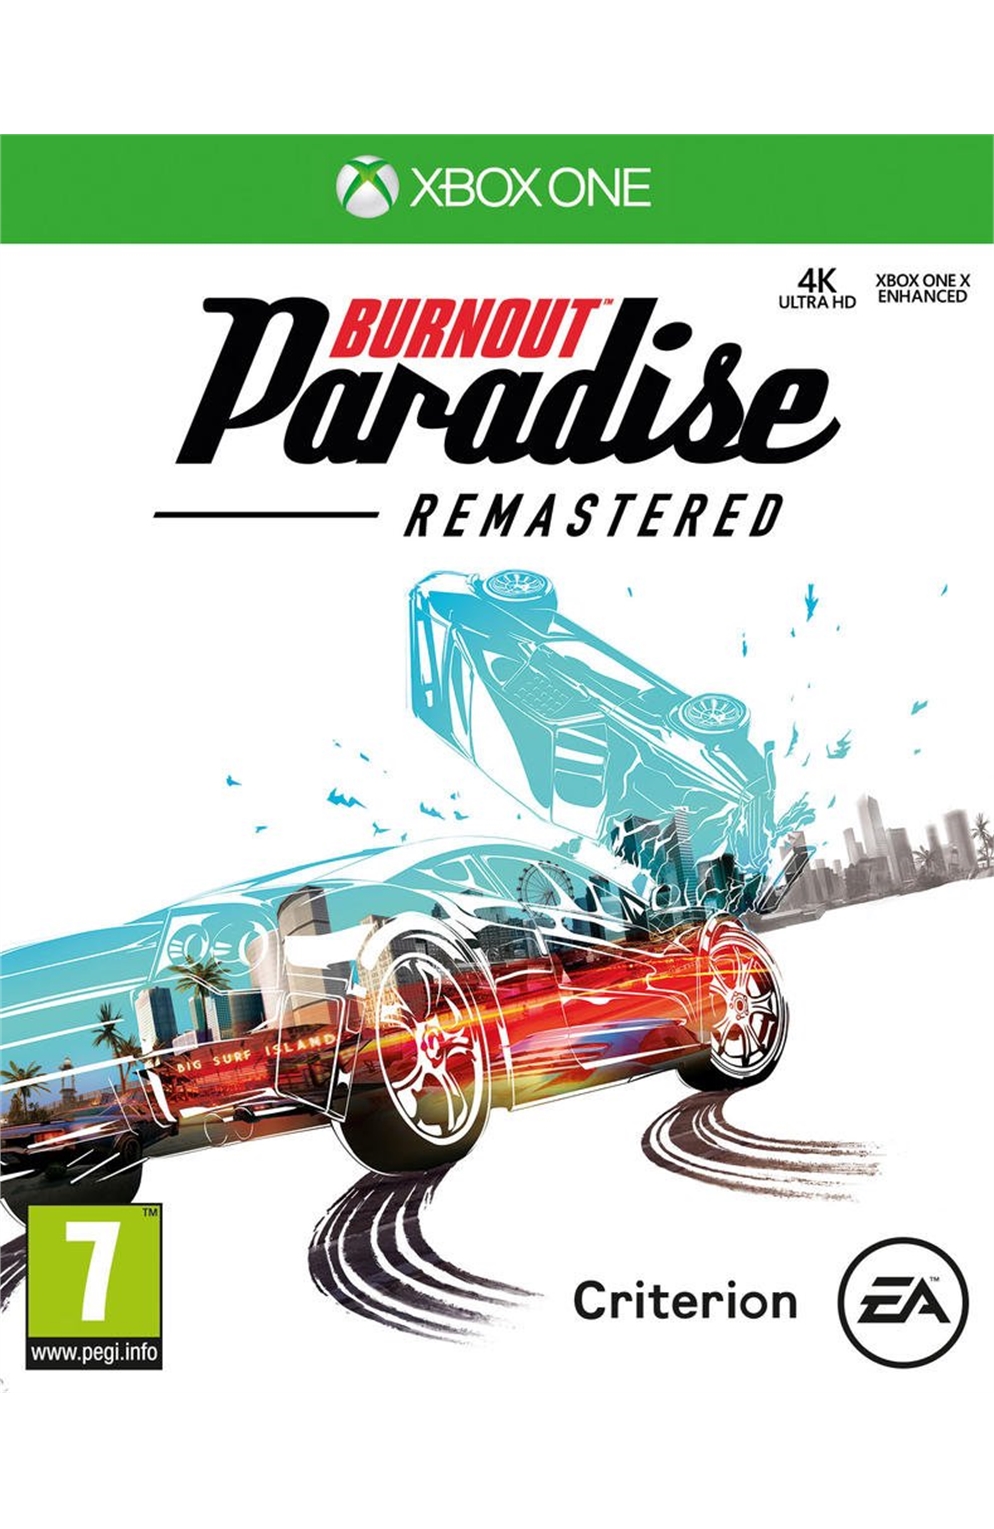 Xbox One Xb1 Burnout Paradise Remastered